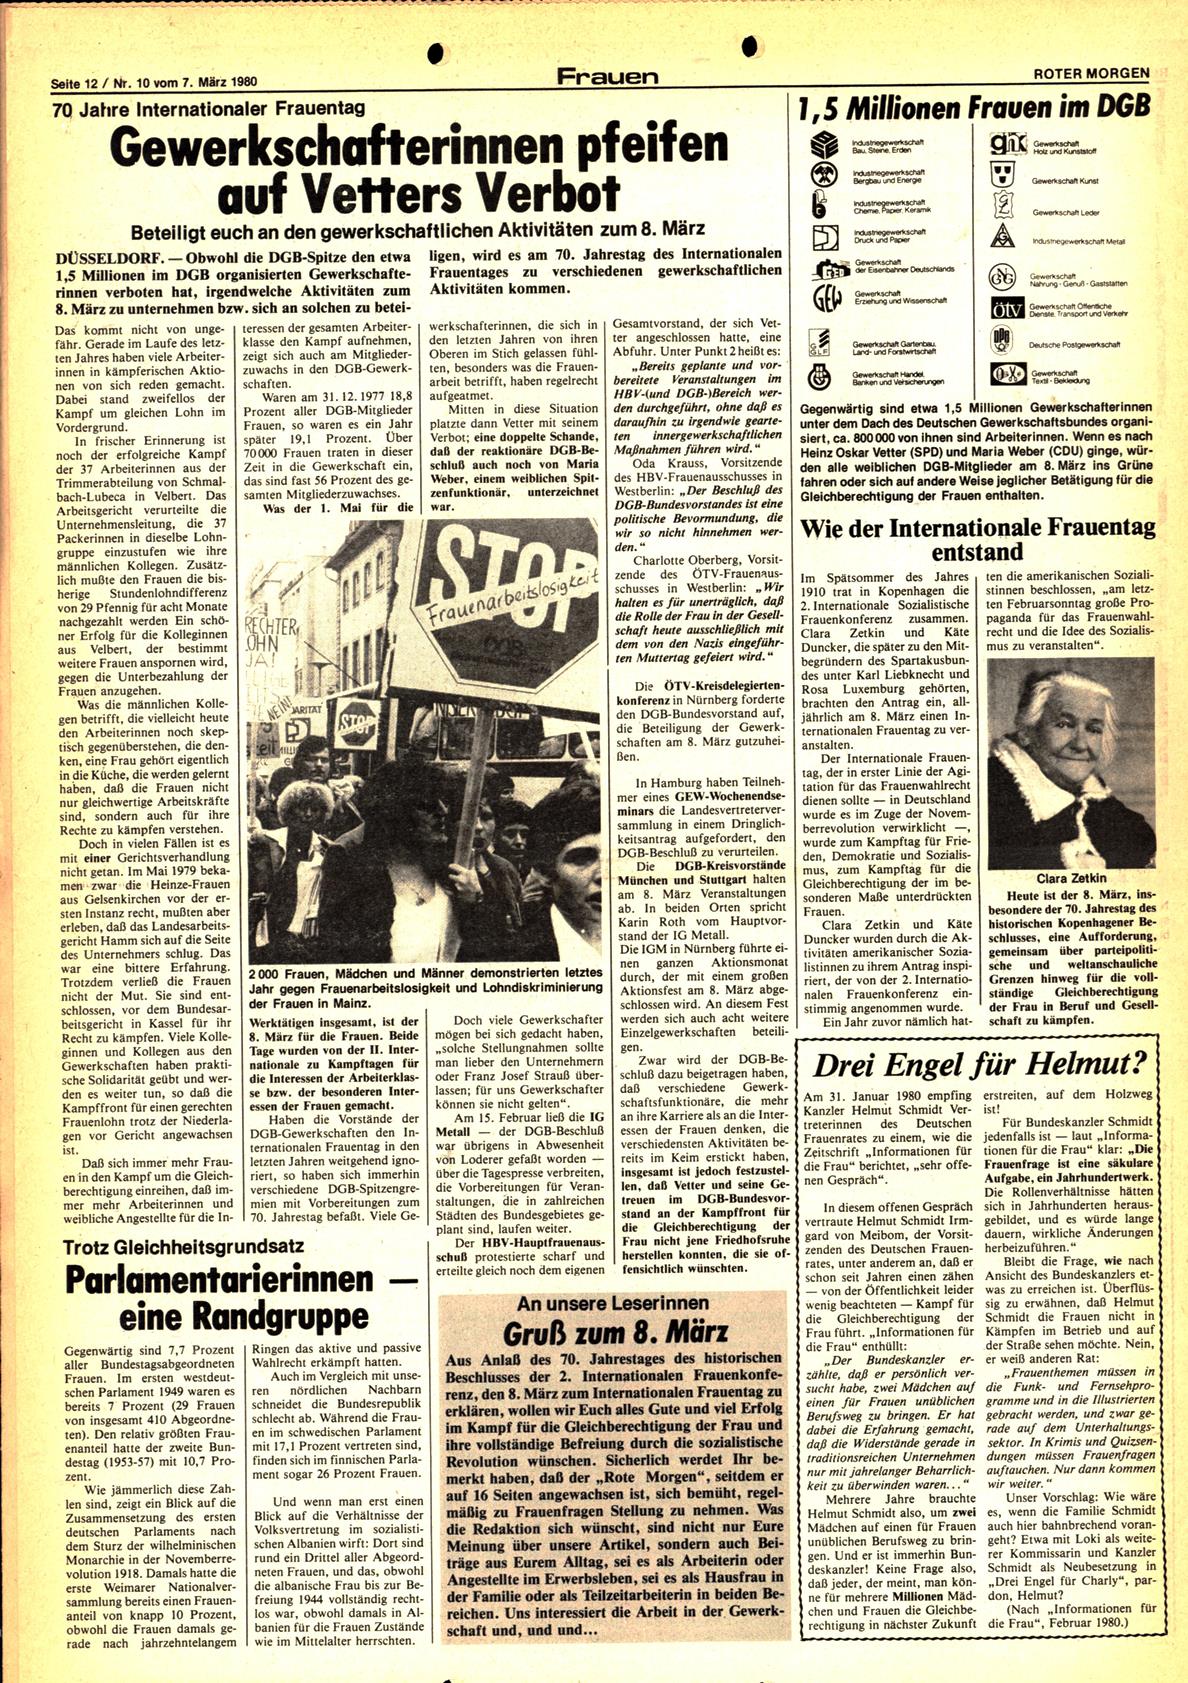 Roter Morgen, 14. Jg., 7. März 1980, Nr. 10, Seite 12